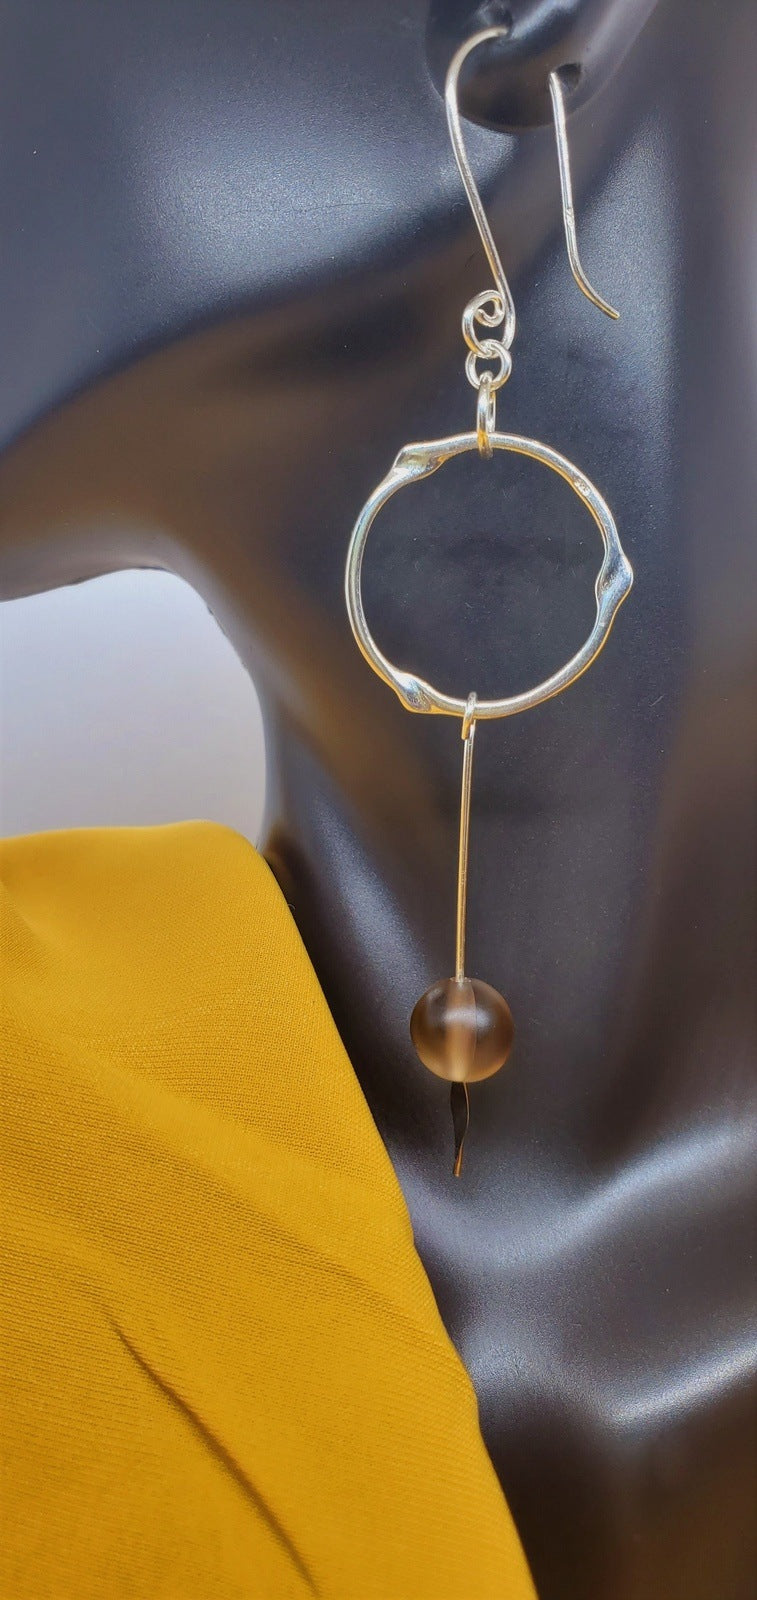 dangle earrings with yellow, bead earrings, handmade earrings, earrings side view, earrings by Jiana Deon, Mystix Drop Earrings